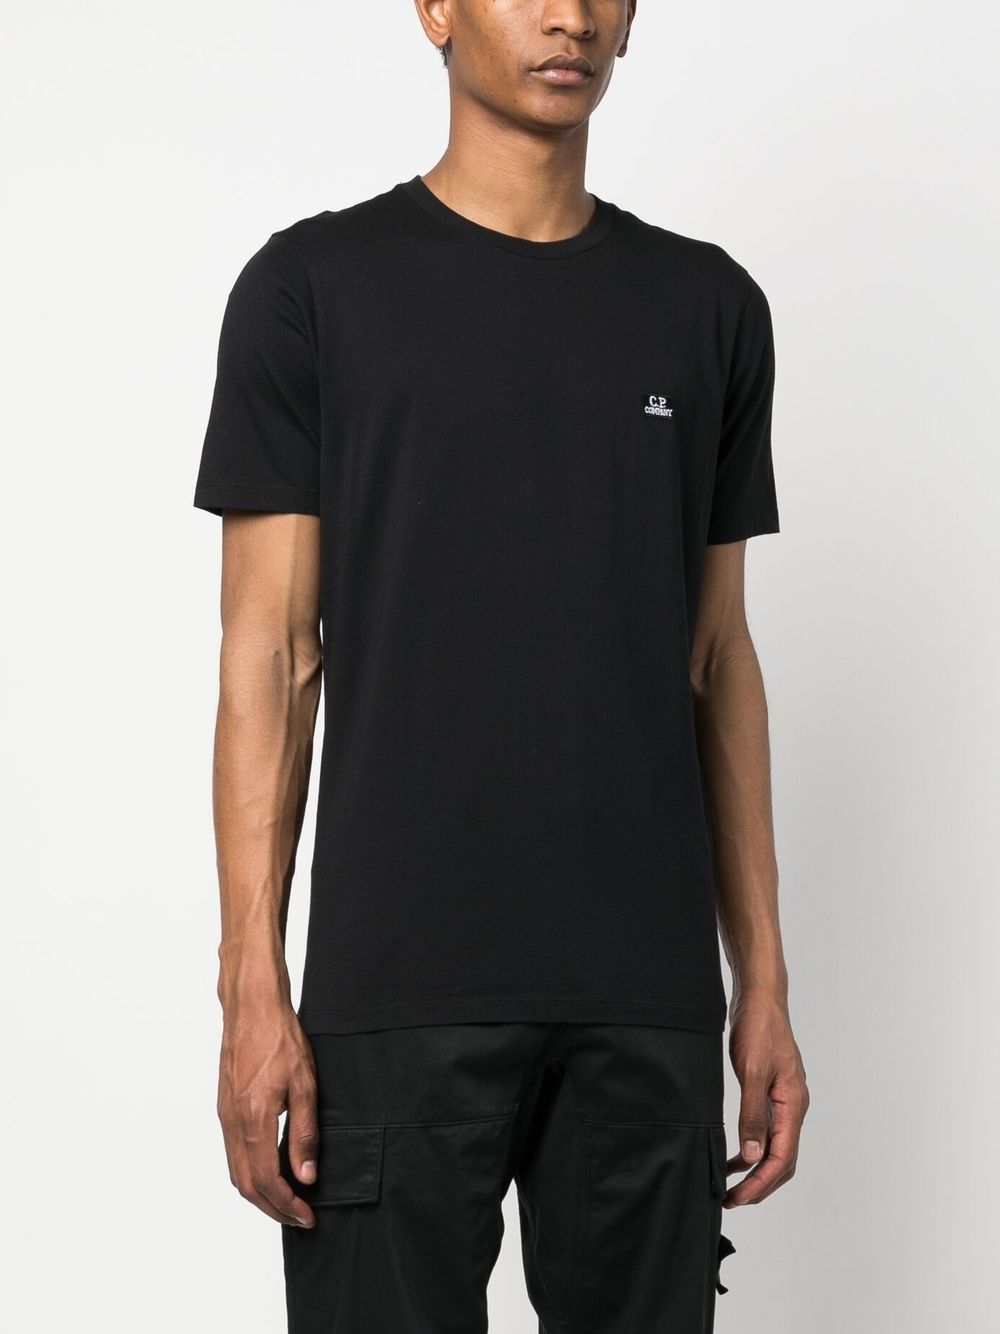 C.P. Company -T-shirt noir 30/1 Jersey - Lothaire